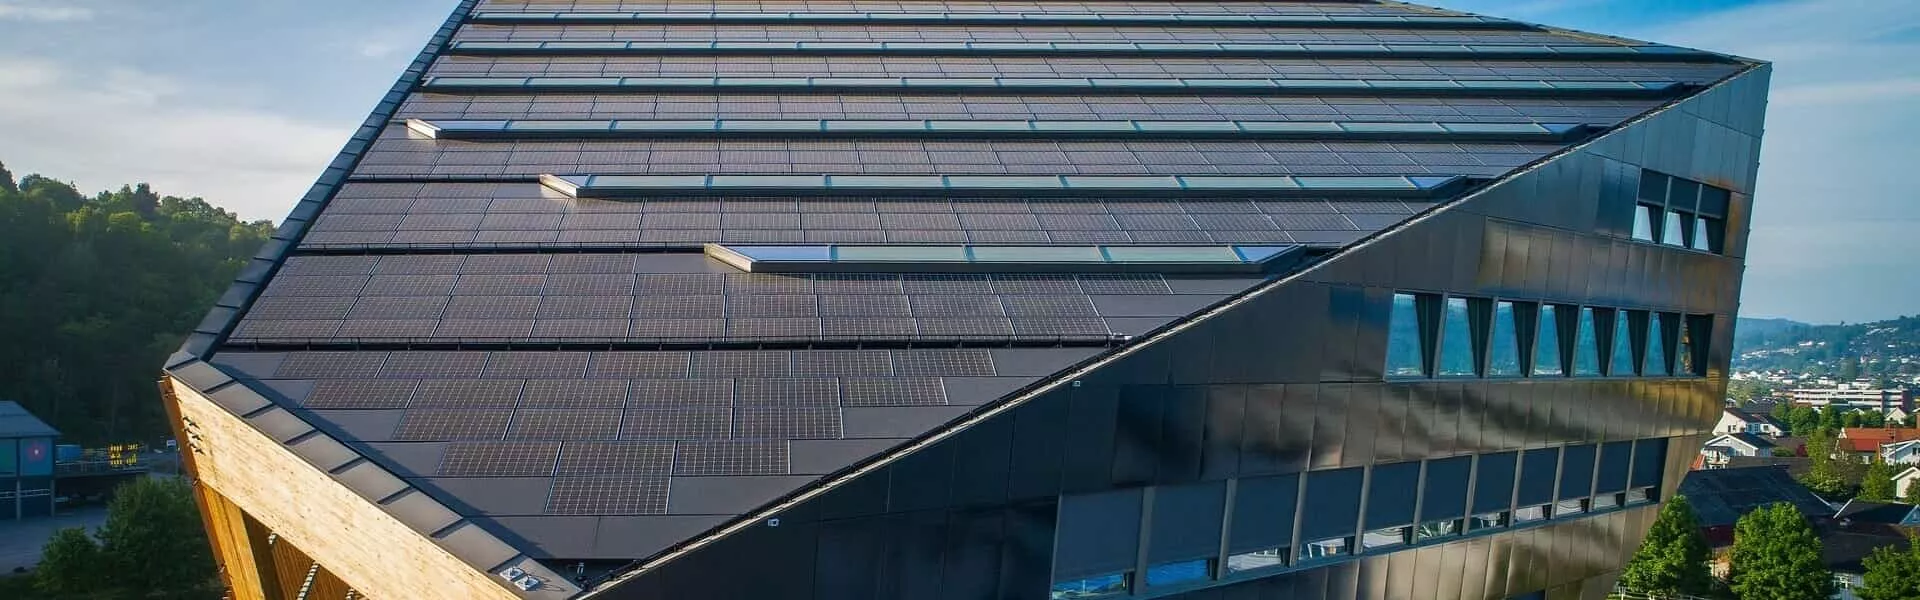 Het nieuwe project van Maxeon Solar Technologies is een mijlpaal in de energiepositieve bouw van gebouwen en helpt een standaard te zetten om de hele sector koolstofvrij te maken.